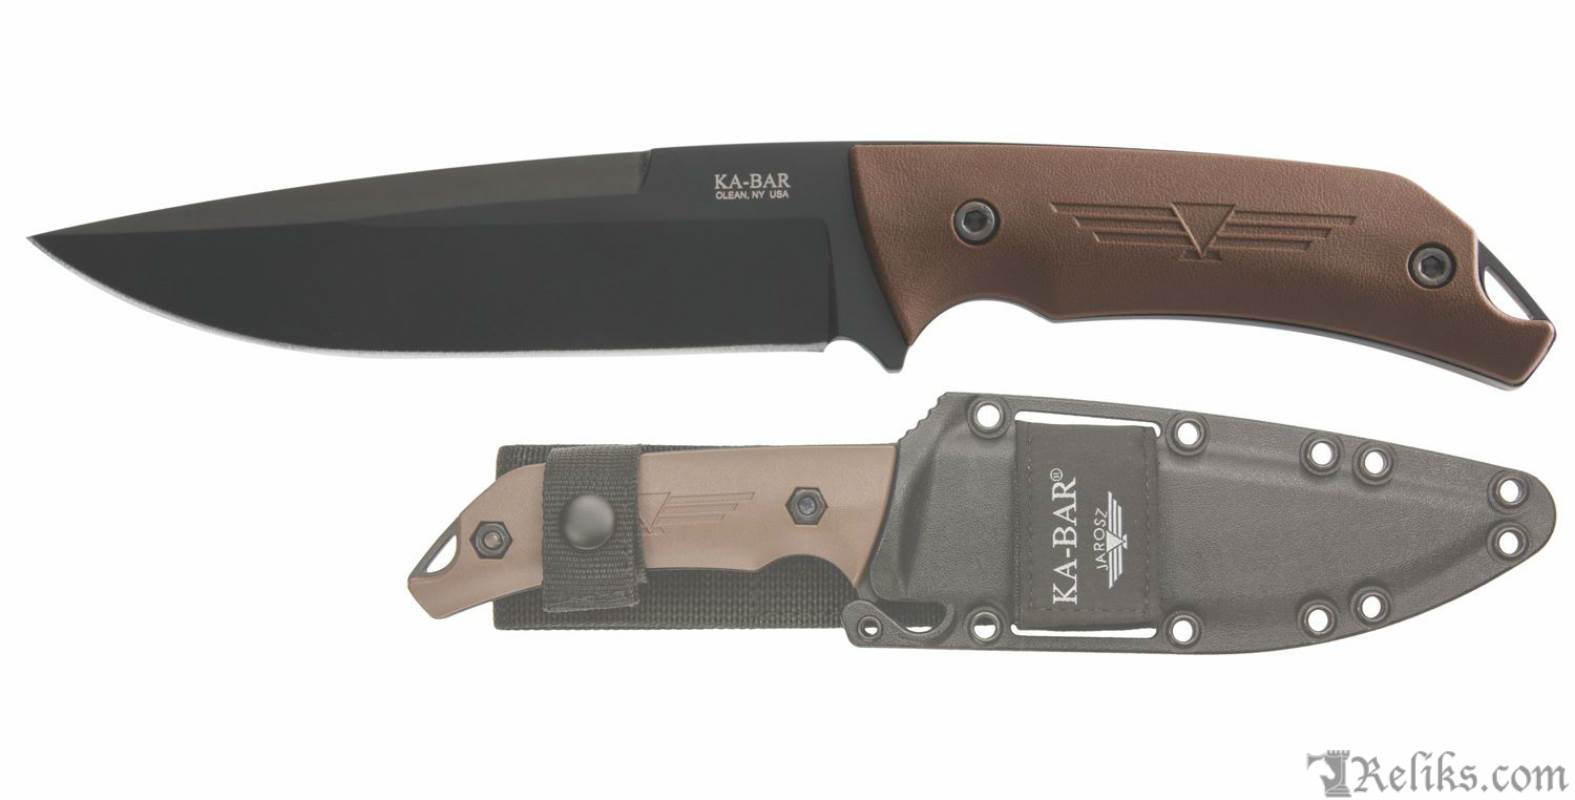 Jarosz Turok Tactical Survival Knives Ka Bar Knives At Reliks Com